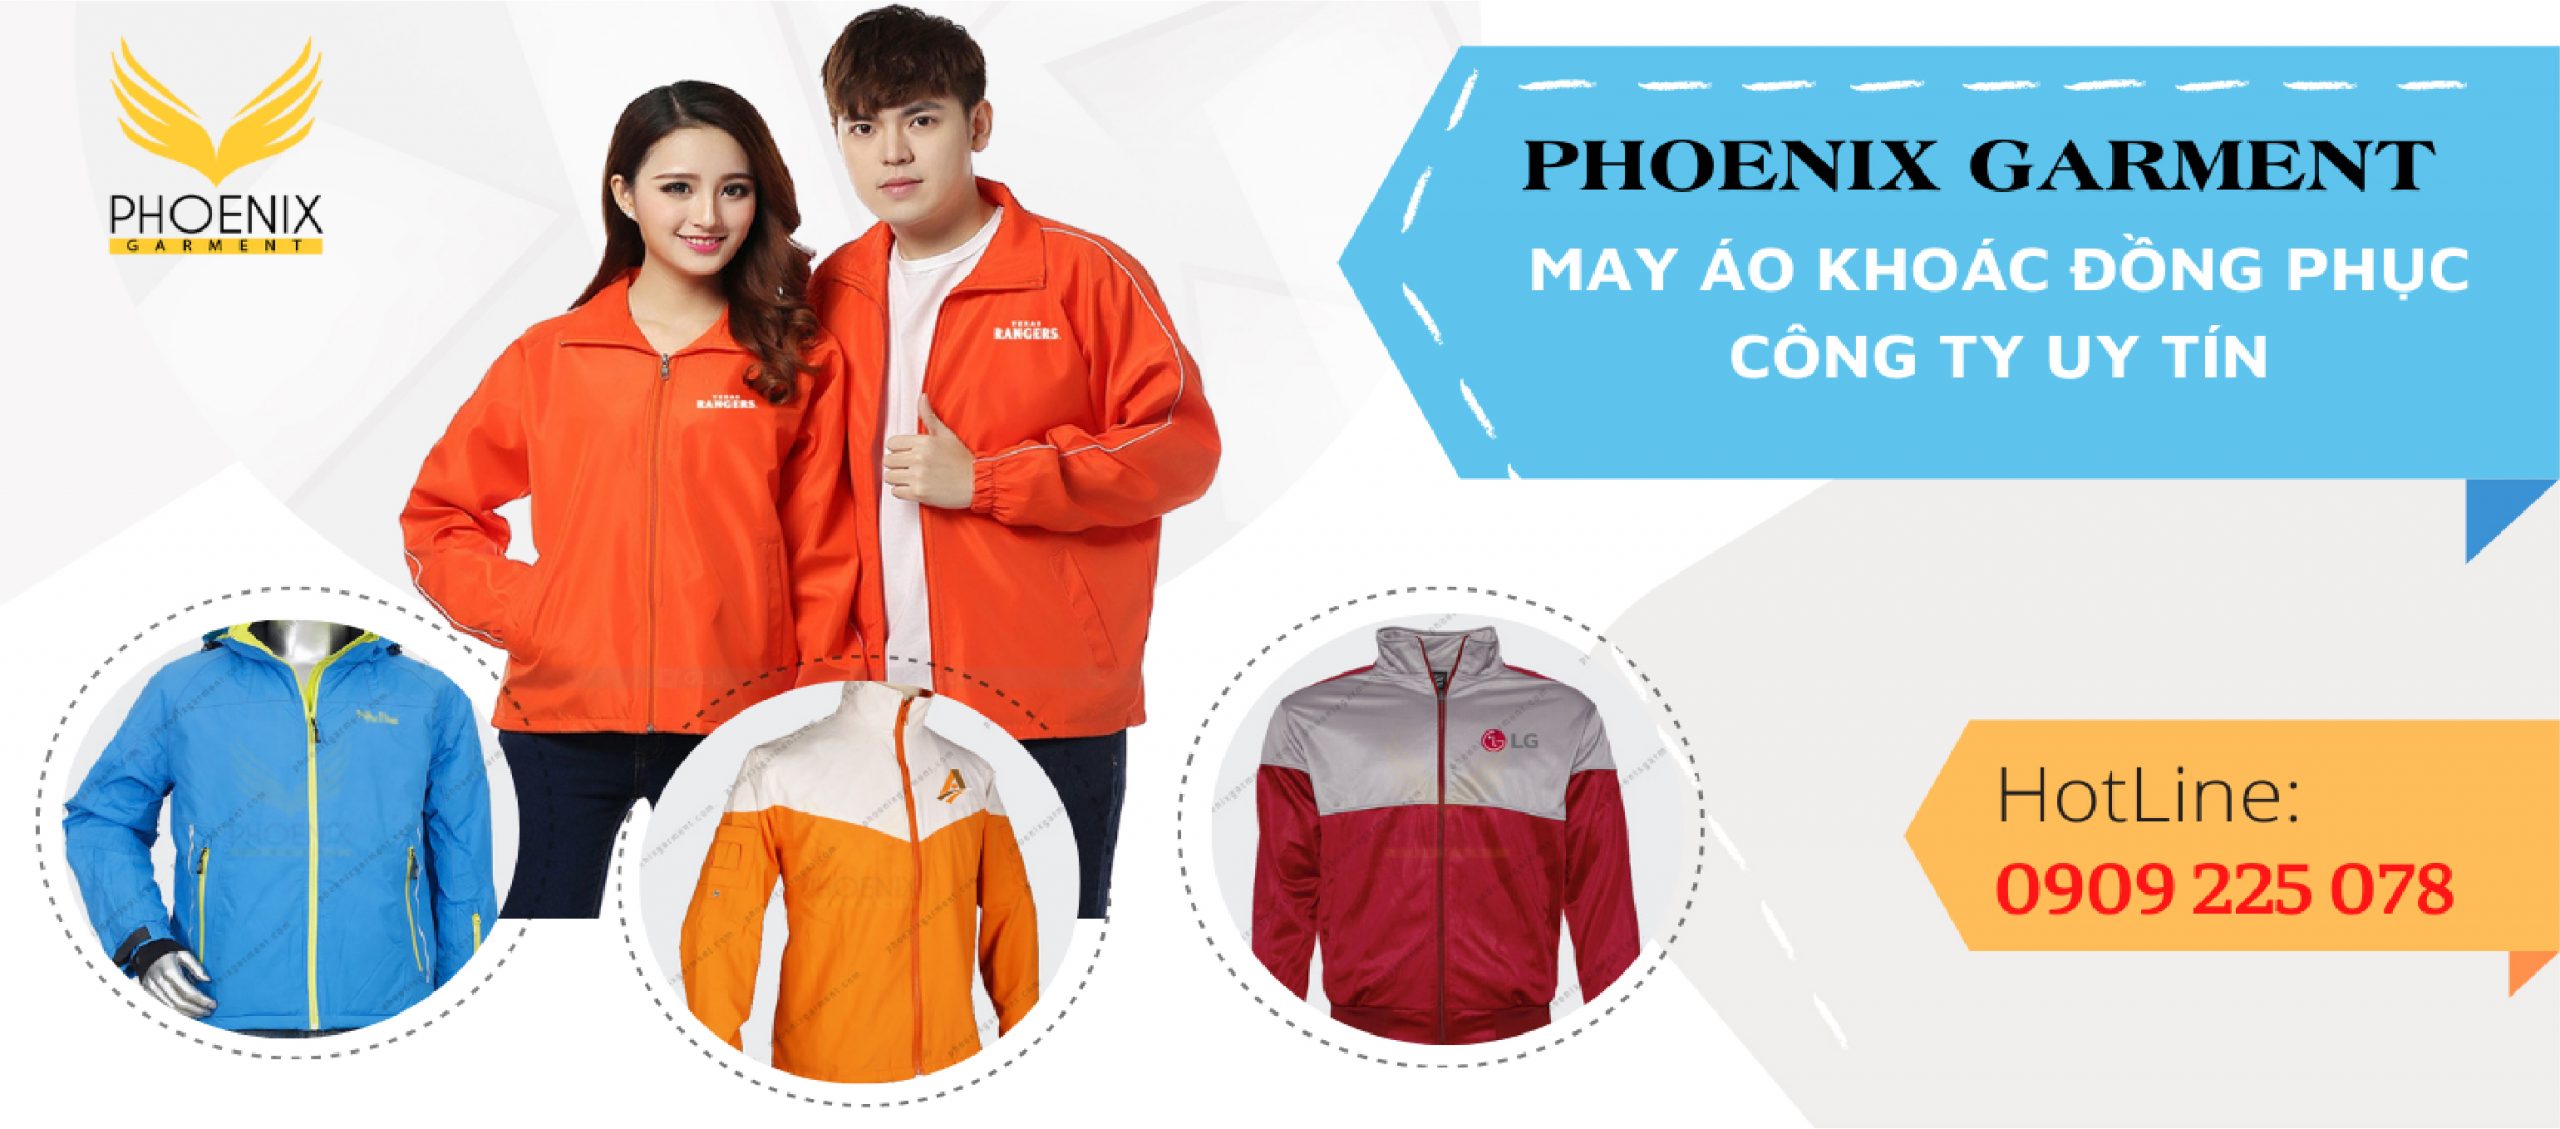 may áo khoác gió công ty - phoenix garment